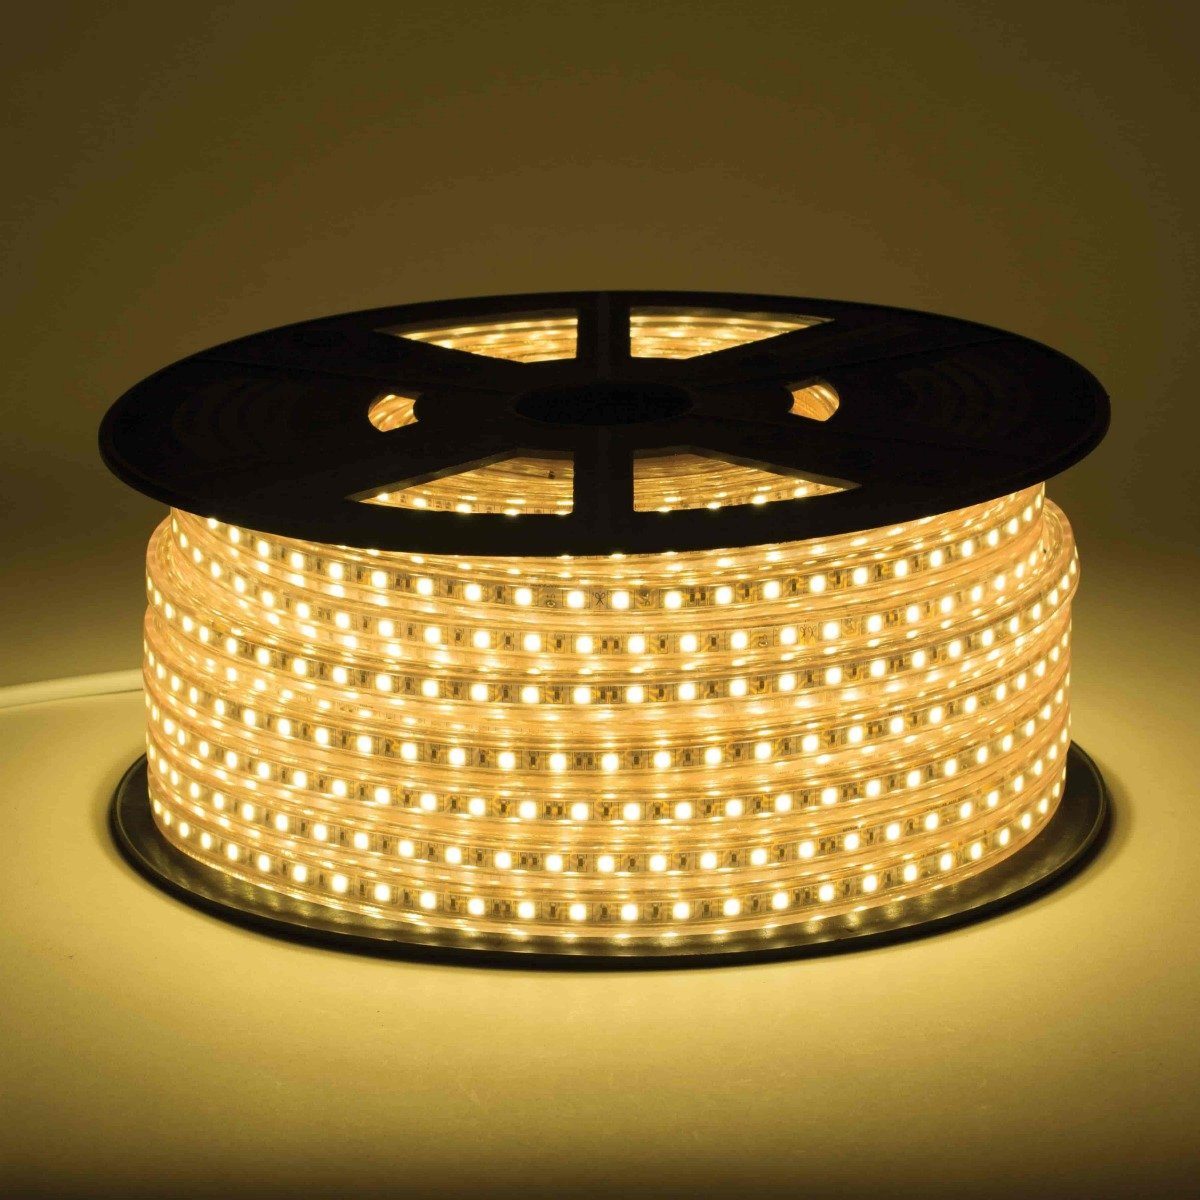 https://www.lumilum.com/cdn/shop/products/120v-led-strip-lights-165-ft-50-meters-led-light-roll-high-voltage-120v-led-strip-lights-lumilum-618367_1445x.jpg?v=1619123523